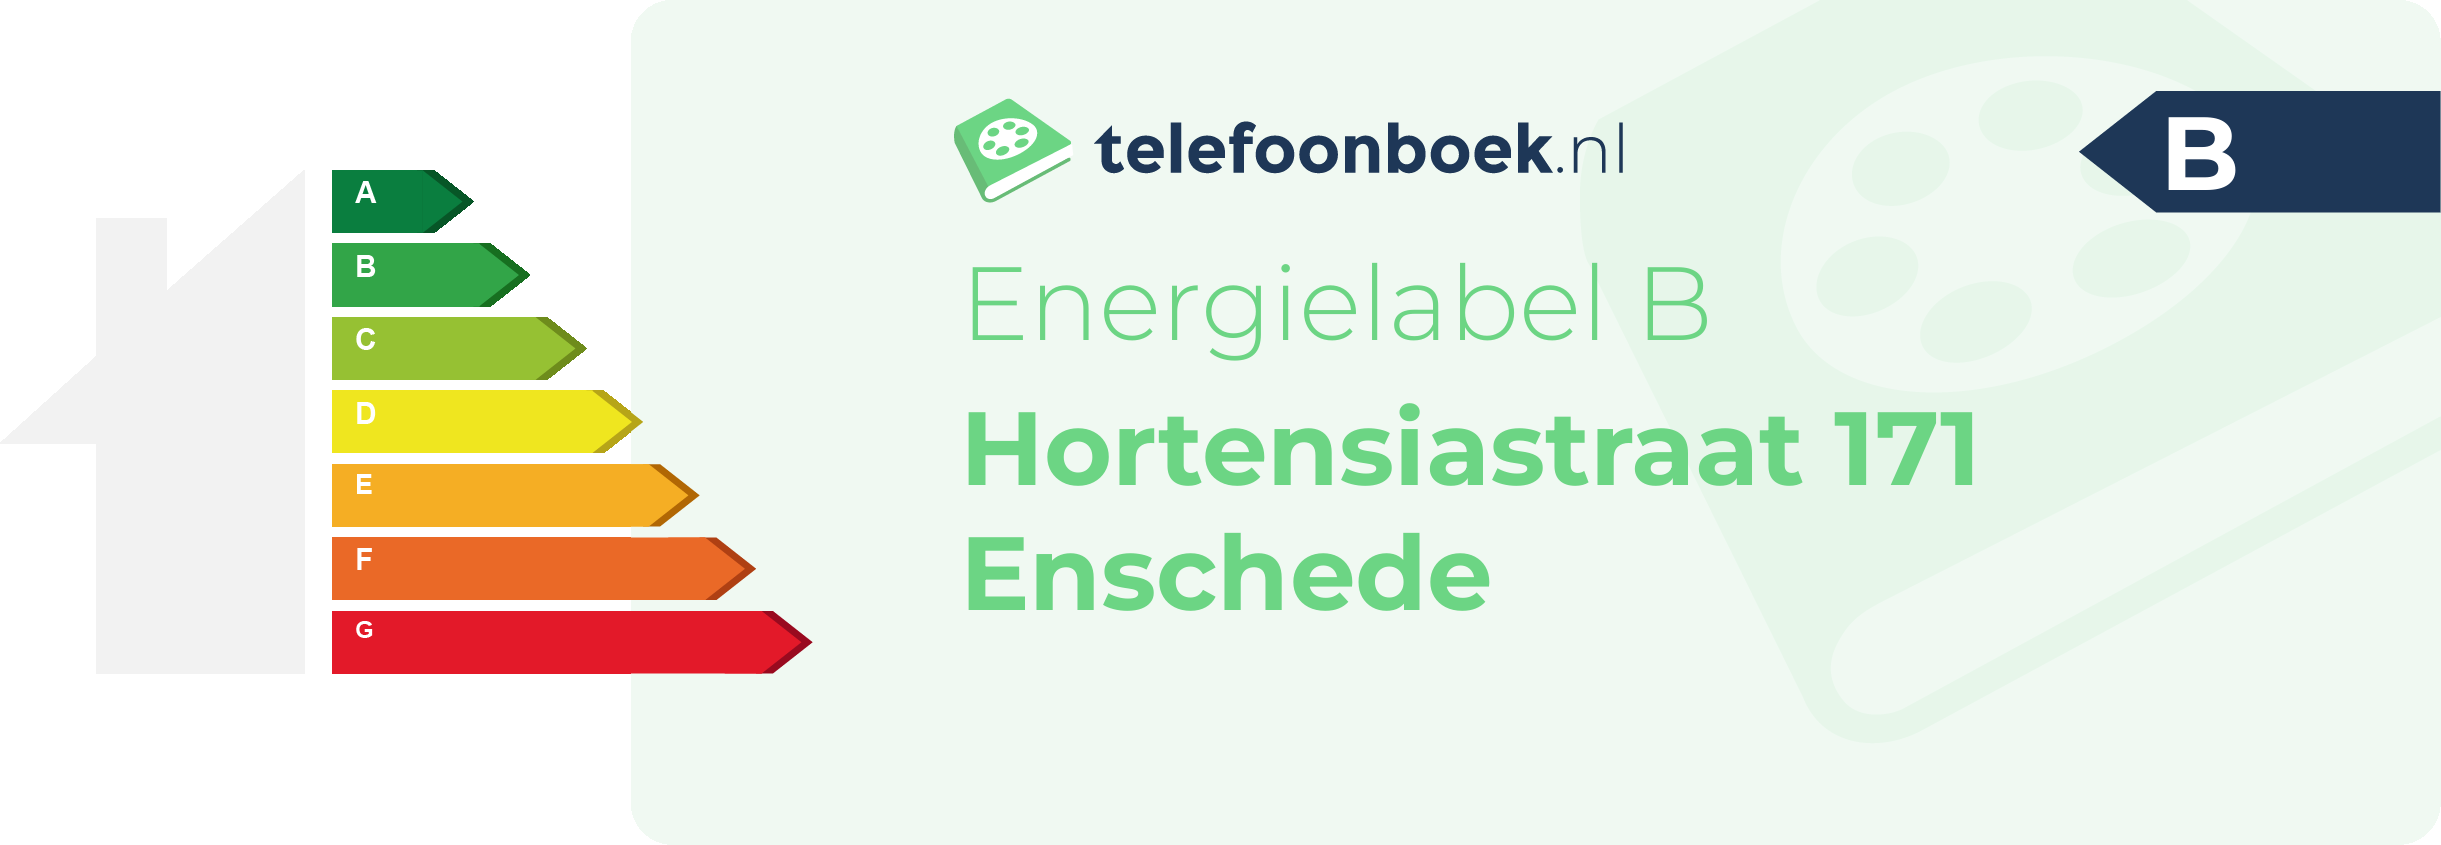 Energielabel Hortensiastraat 171 Enschede